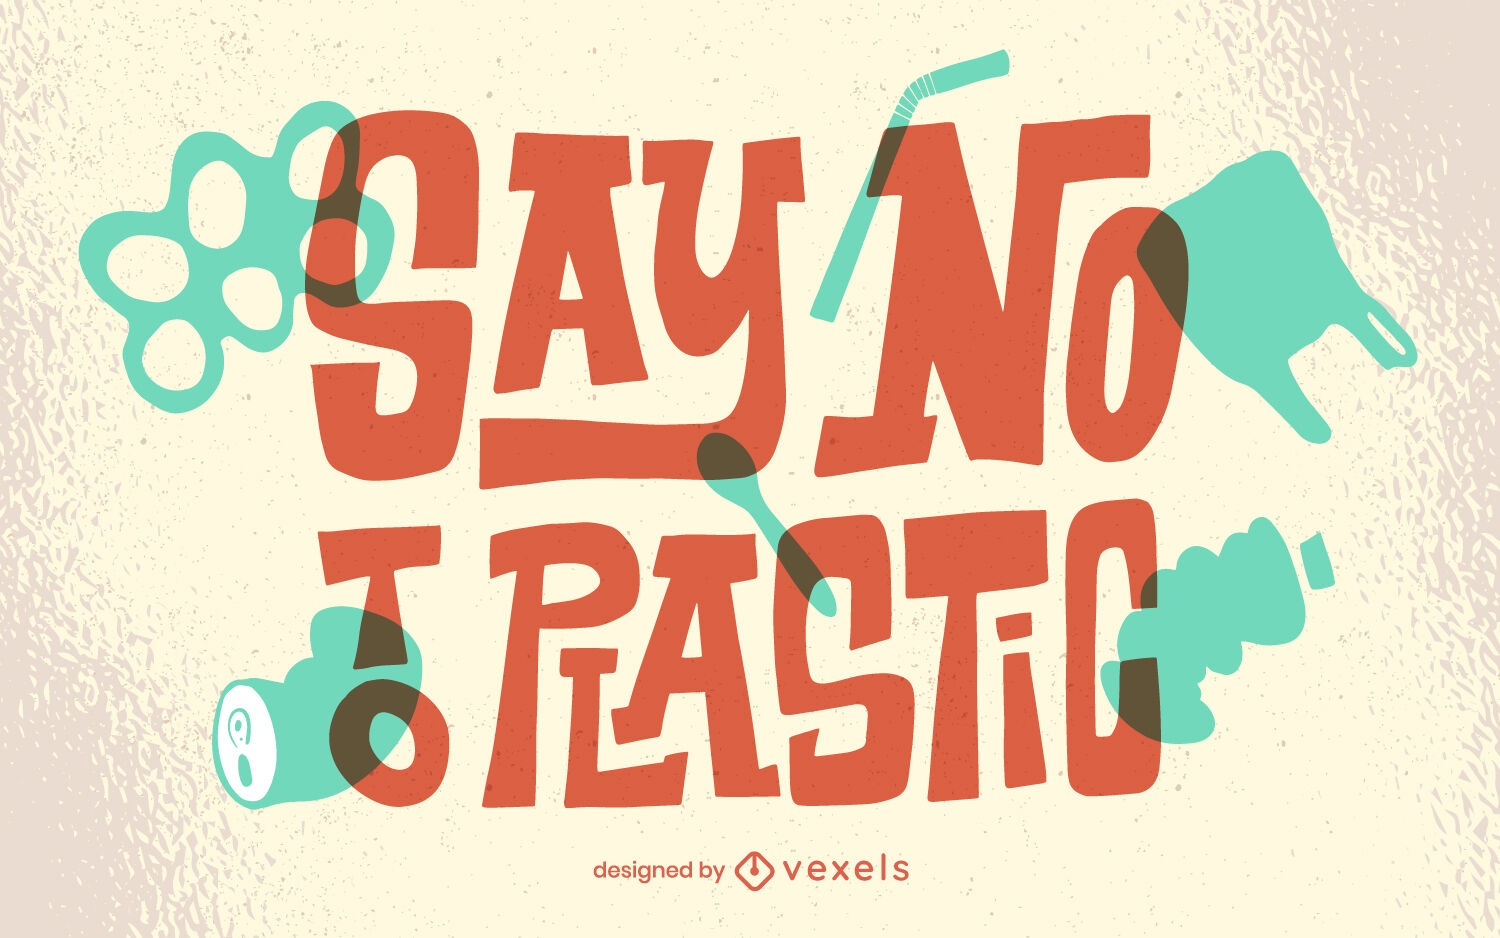 Diga não às letras ecológicas de plástico